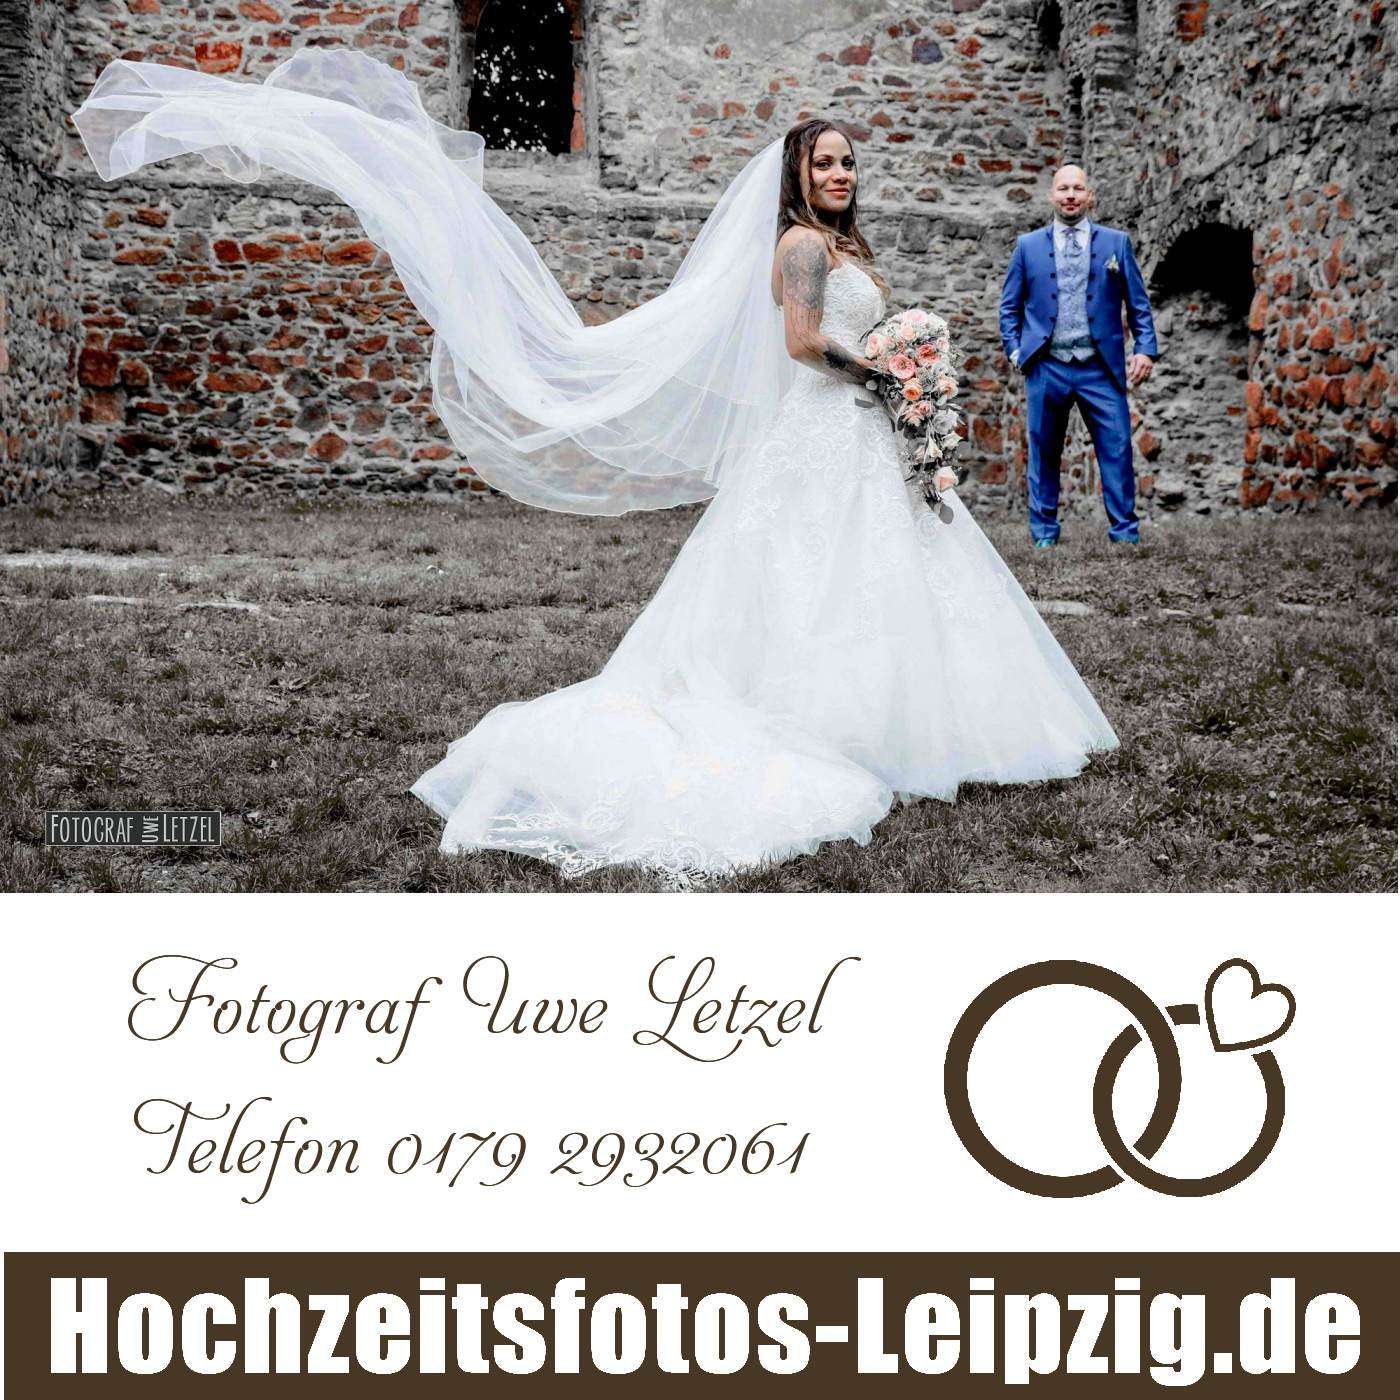 Fotograf zur Hochzeit in Halle/Saale buchen